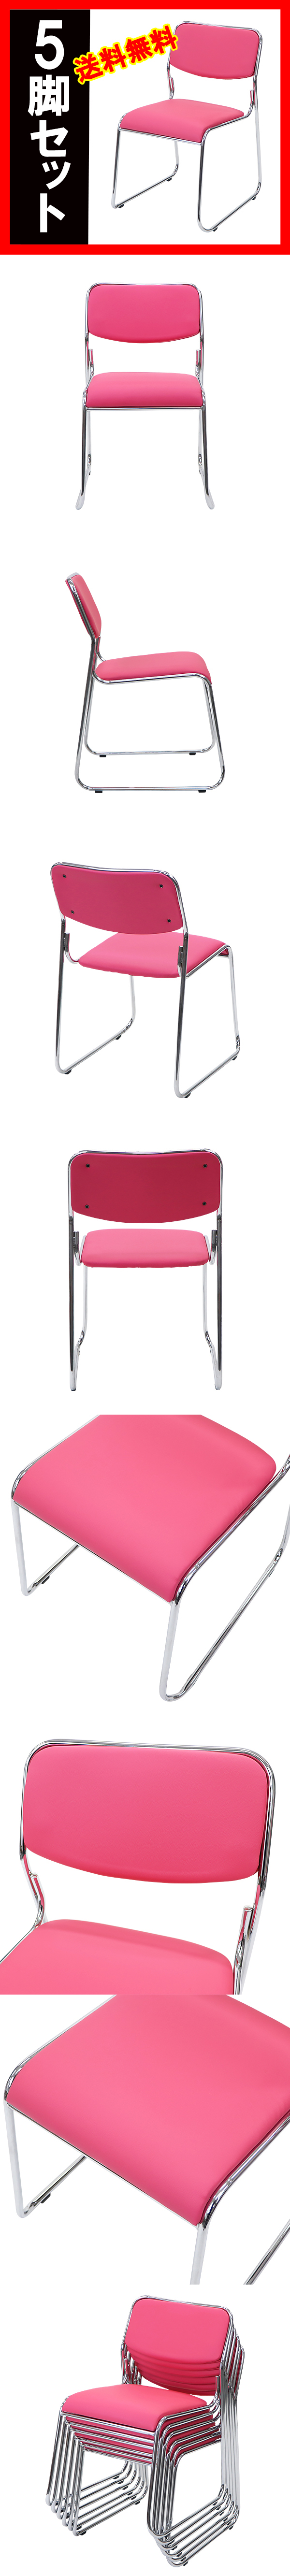 正規品在庫送料無料 新品 ミーティングチェア スタッキングチェア パイプ椅子 会議椅子 5脚セット ピンク パイプイス